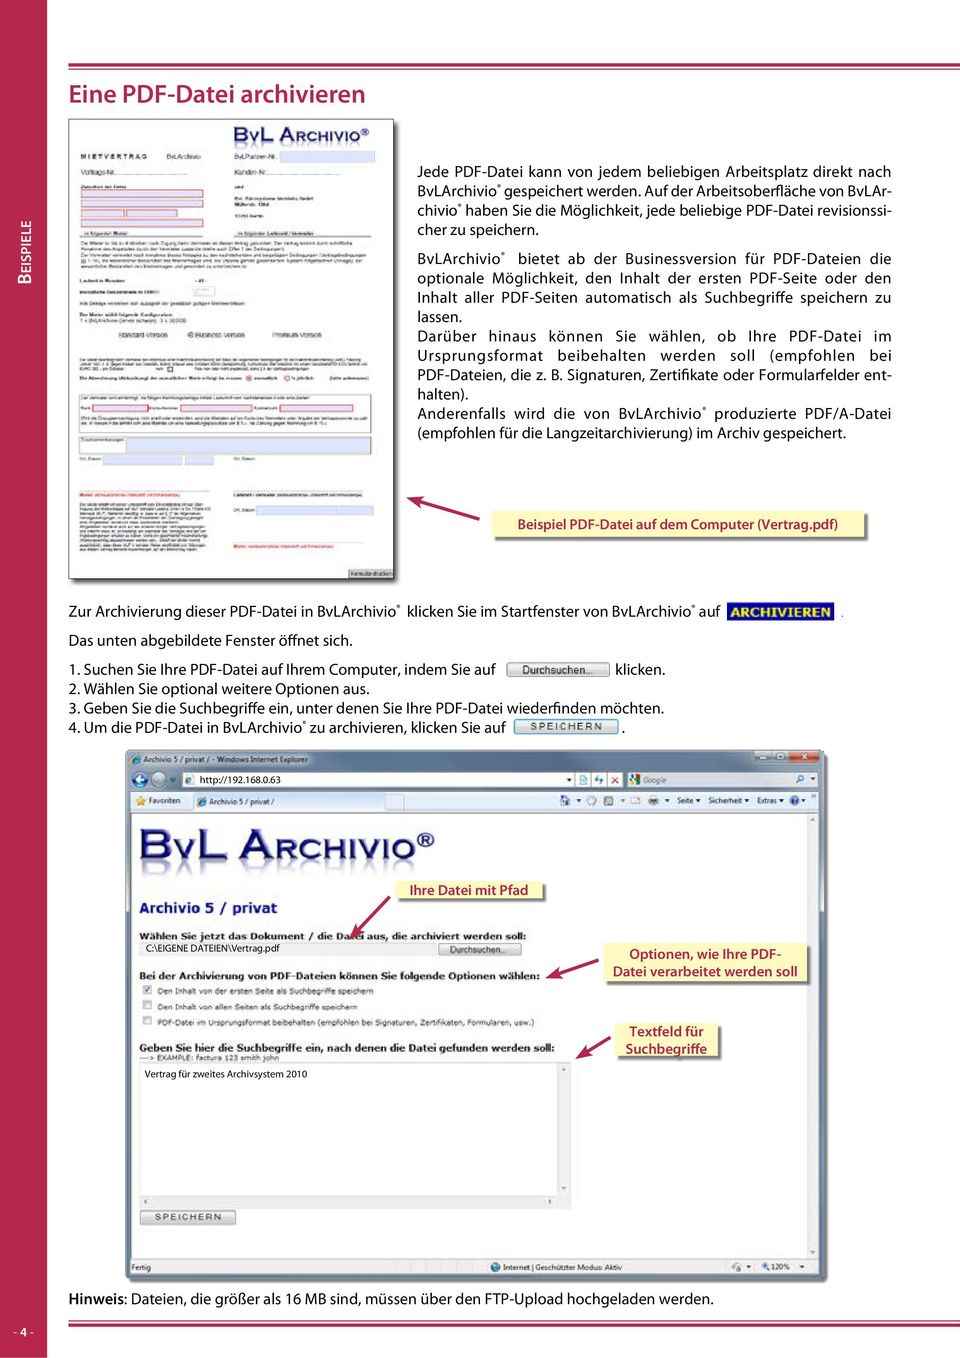 Eine Datei Archivieren Seite 3 U 24 Eine Pdf Datei Archivieren